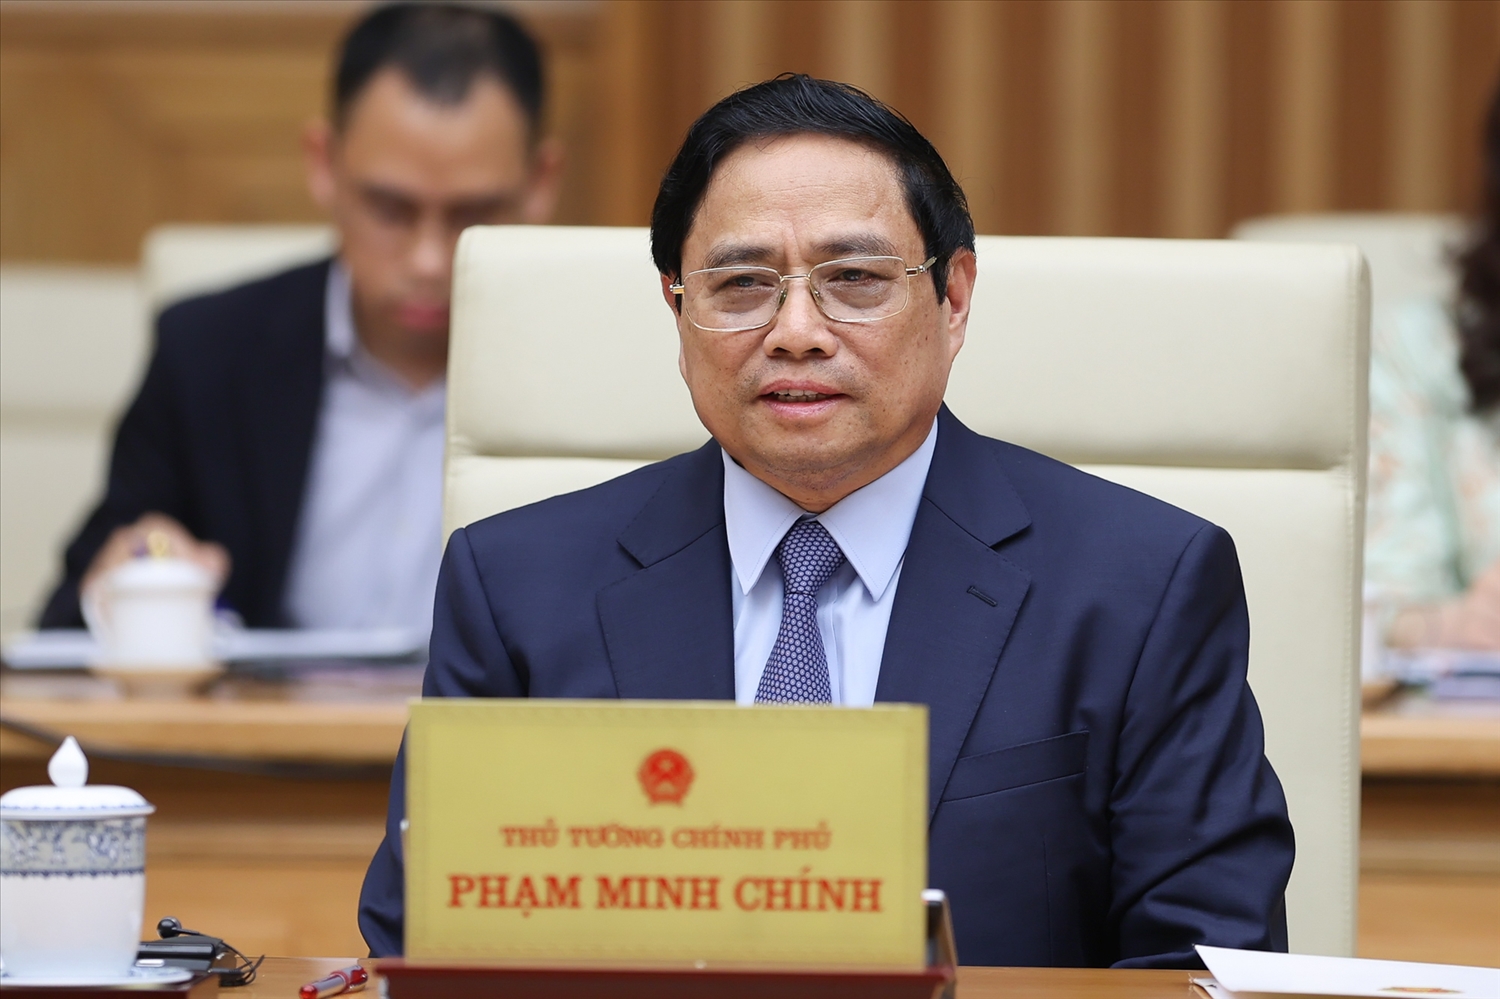 Thủ tướng Chính phủ đã giới thiệu đến đoàn về thành tựu của Việt Nam trong công cuộc đổi mới, phát triển kinh tế - xã hội - Ảnh: VGP/Nhật Bắc